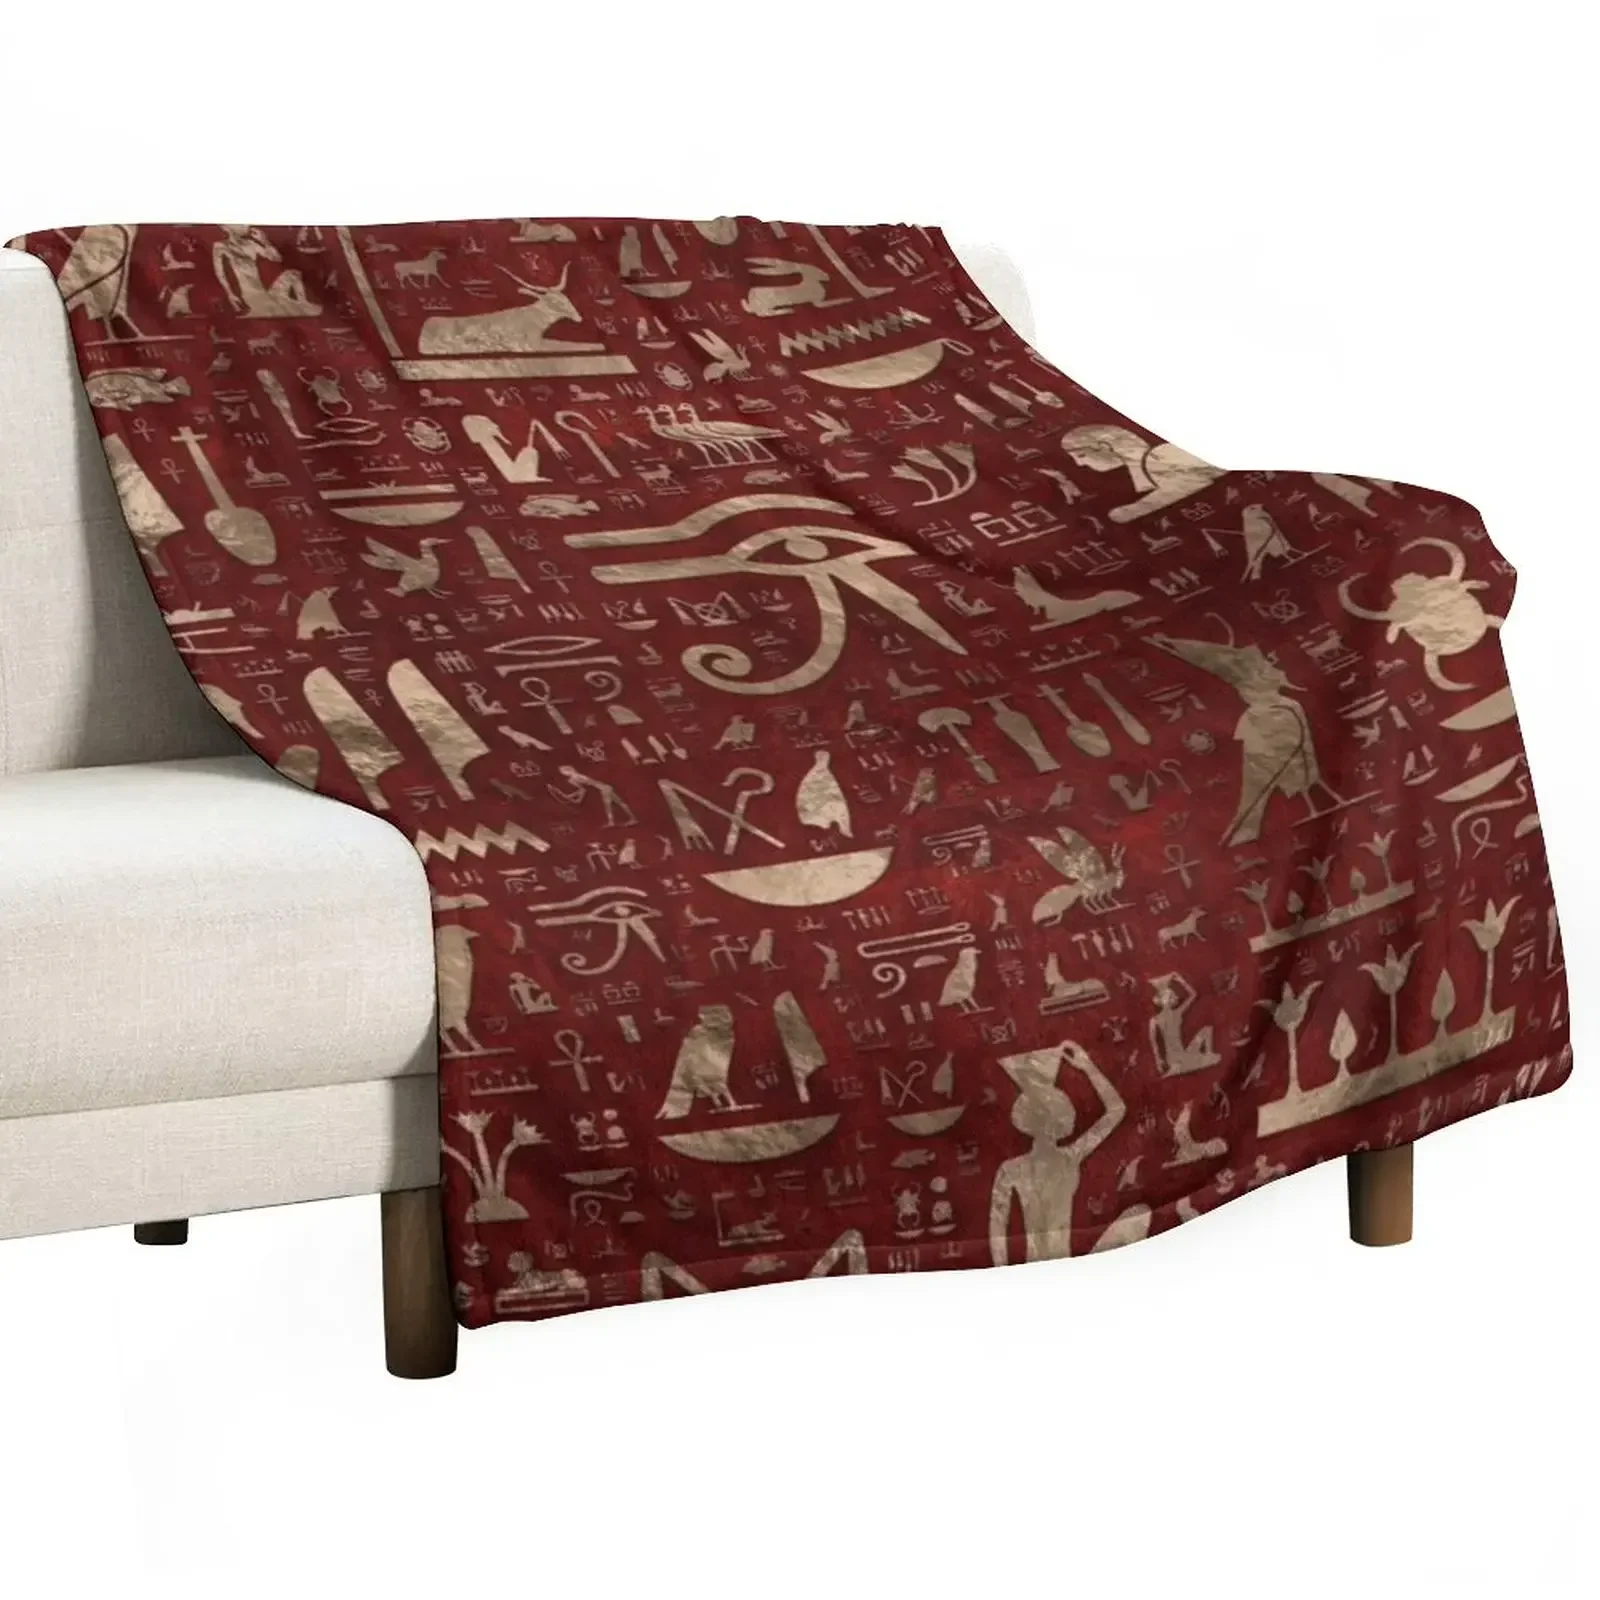 

Древние египетские иероглифы-красное кожаное и Золотое покрывало пляжные декоративные покрывала для кровати одеяла